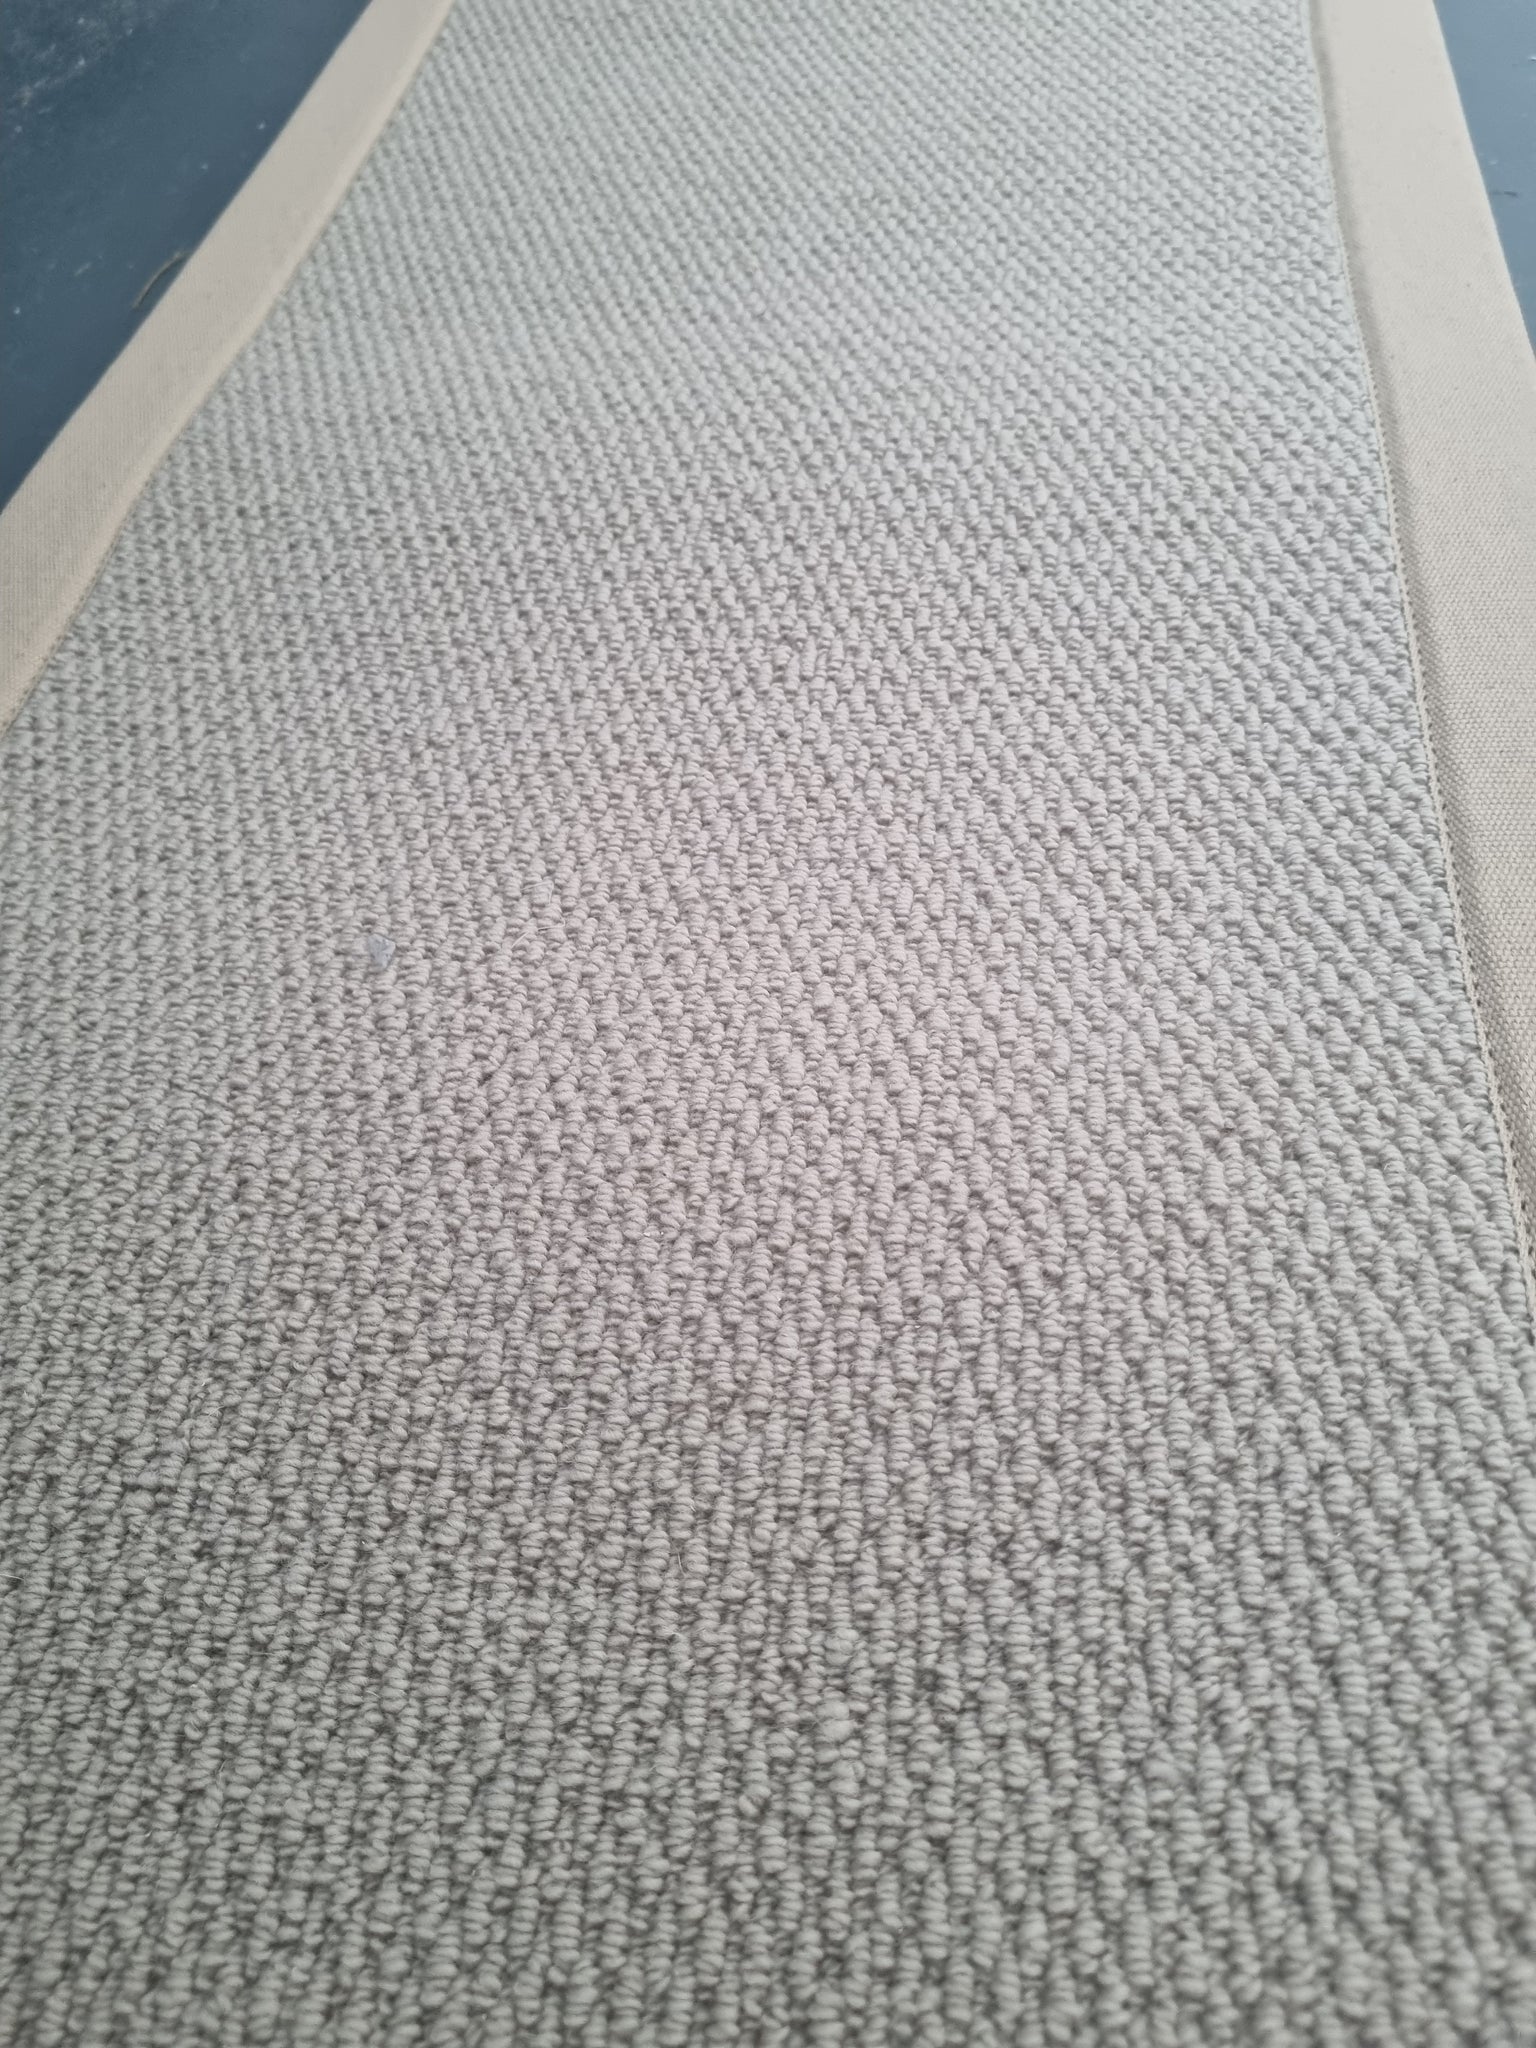 100% wool flat weave beige loop pile rug and floor runner with beige border